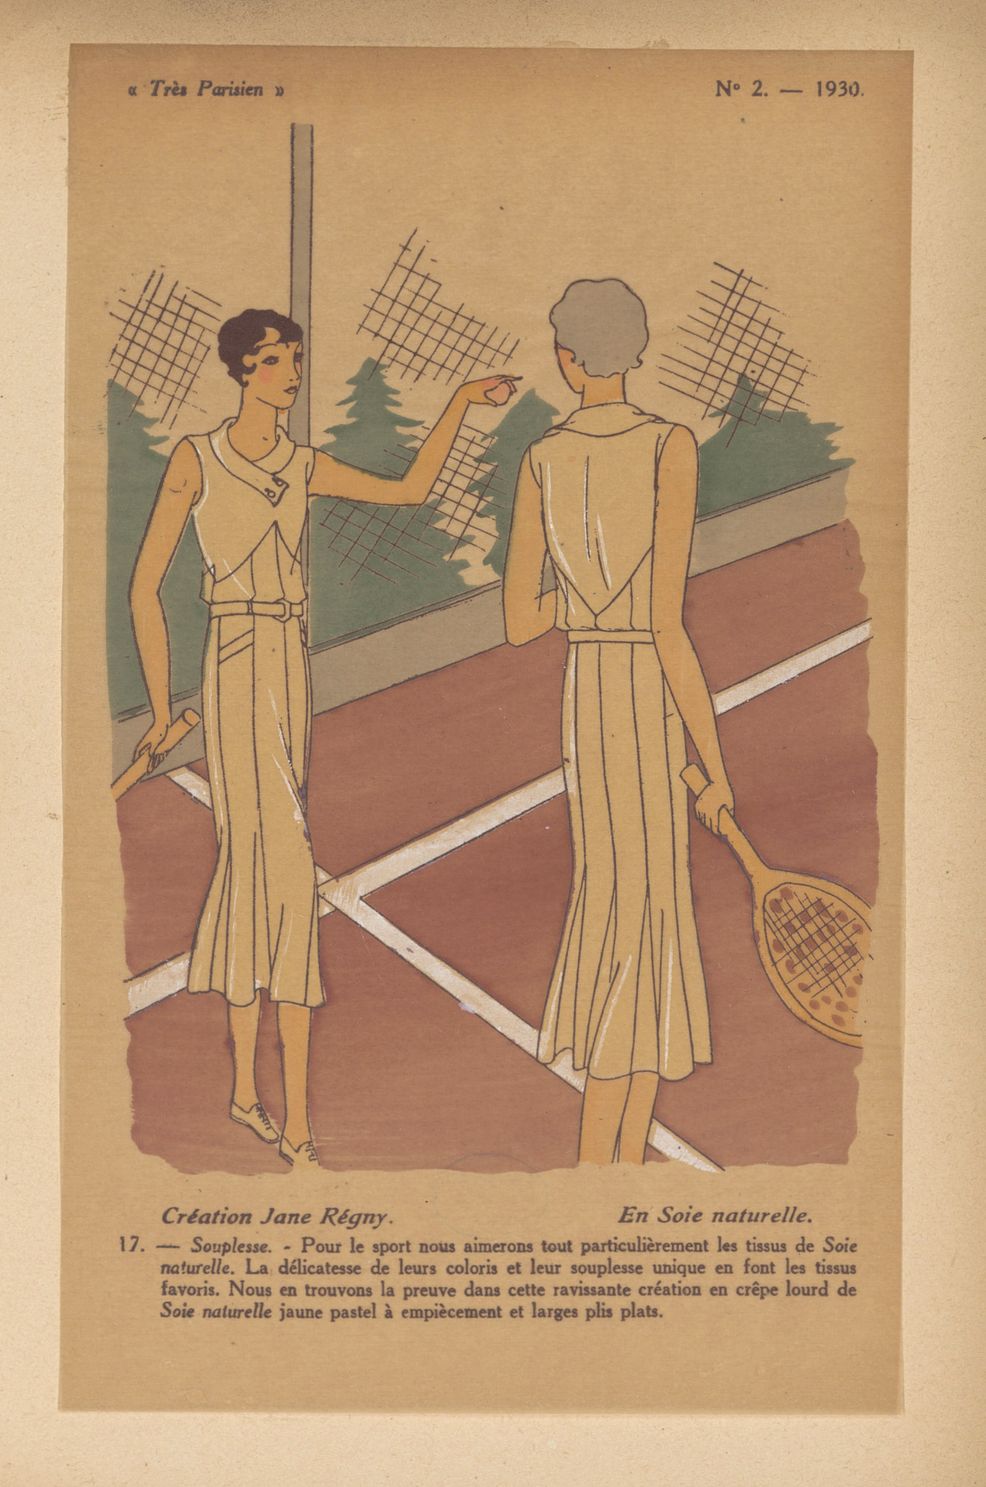 Tenues de tennis dessinées par de grands couturiers français. Très parisien, 1930. (BM Reims, PER X 13)